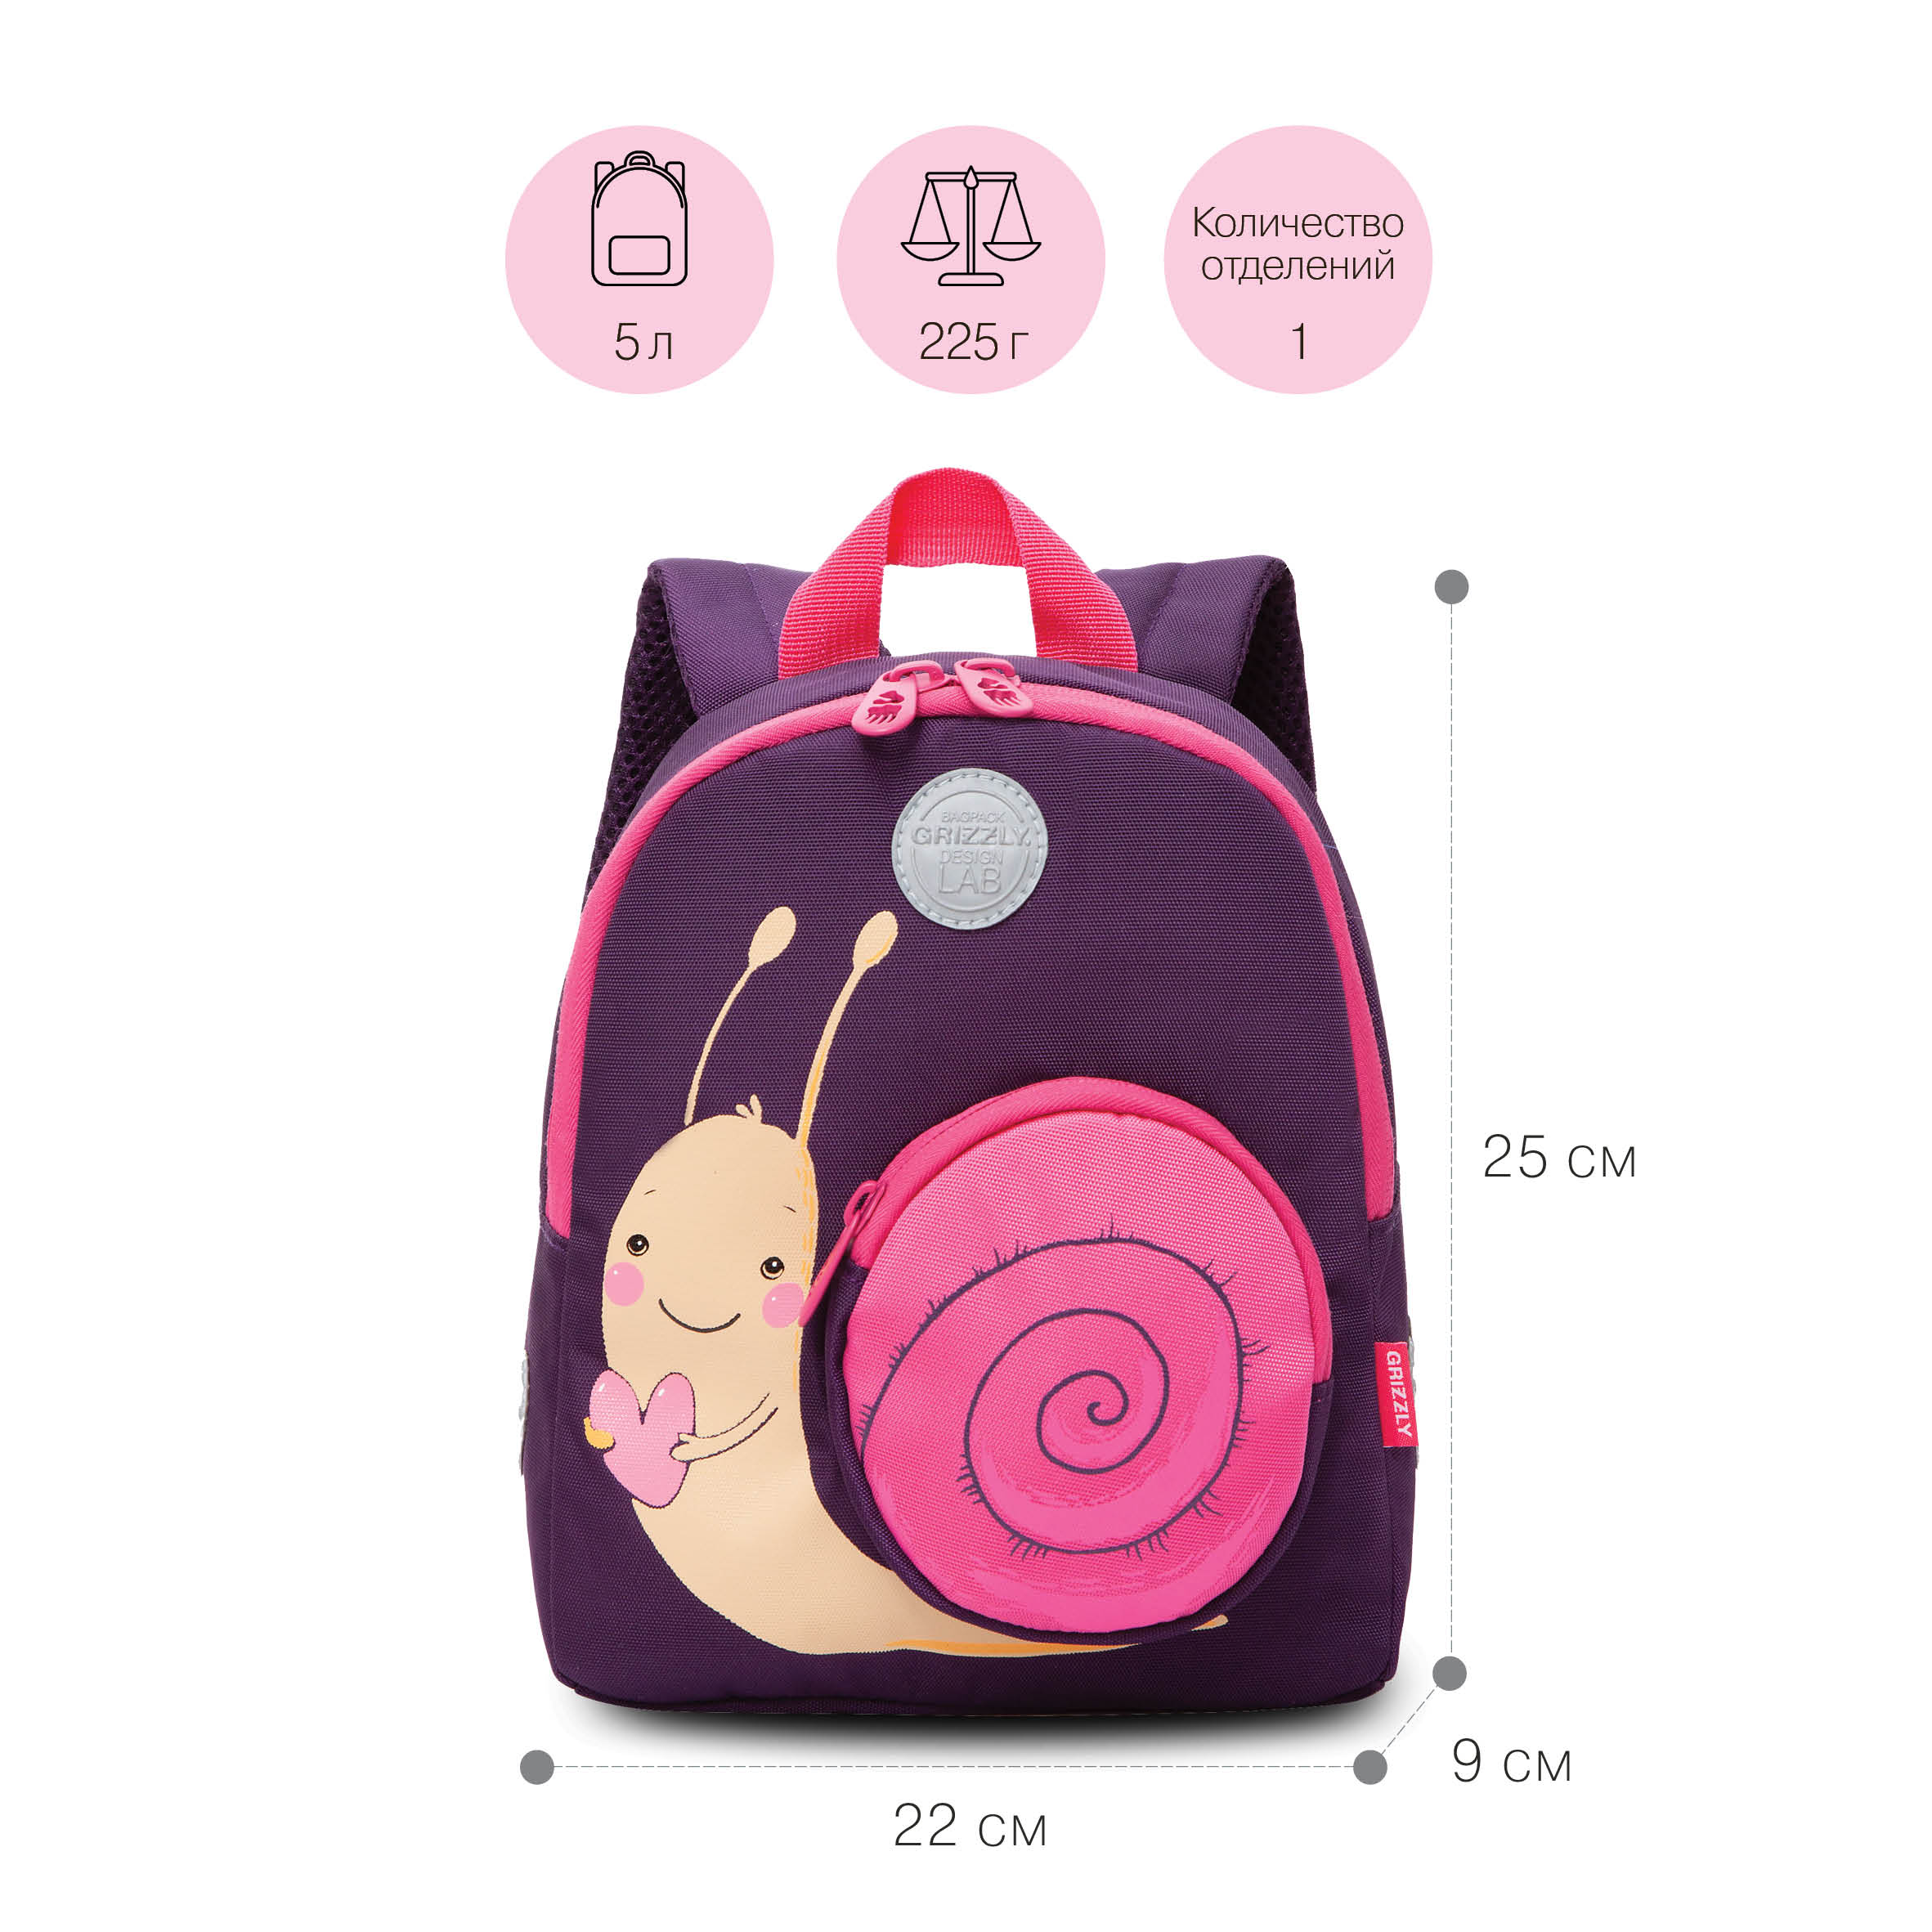 RK-280-2 рюкзак детский